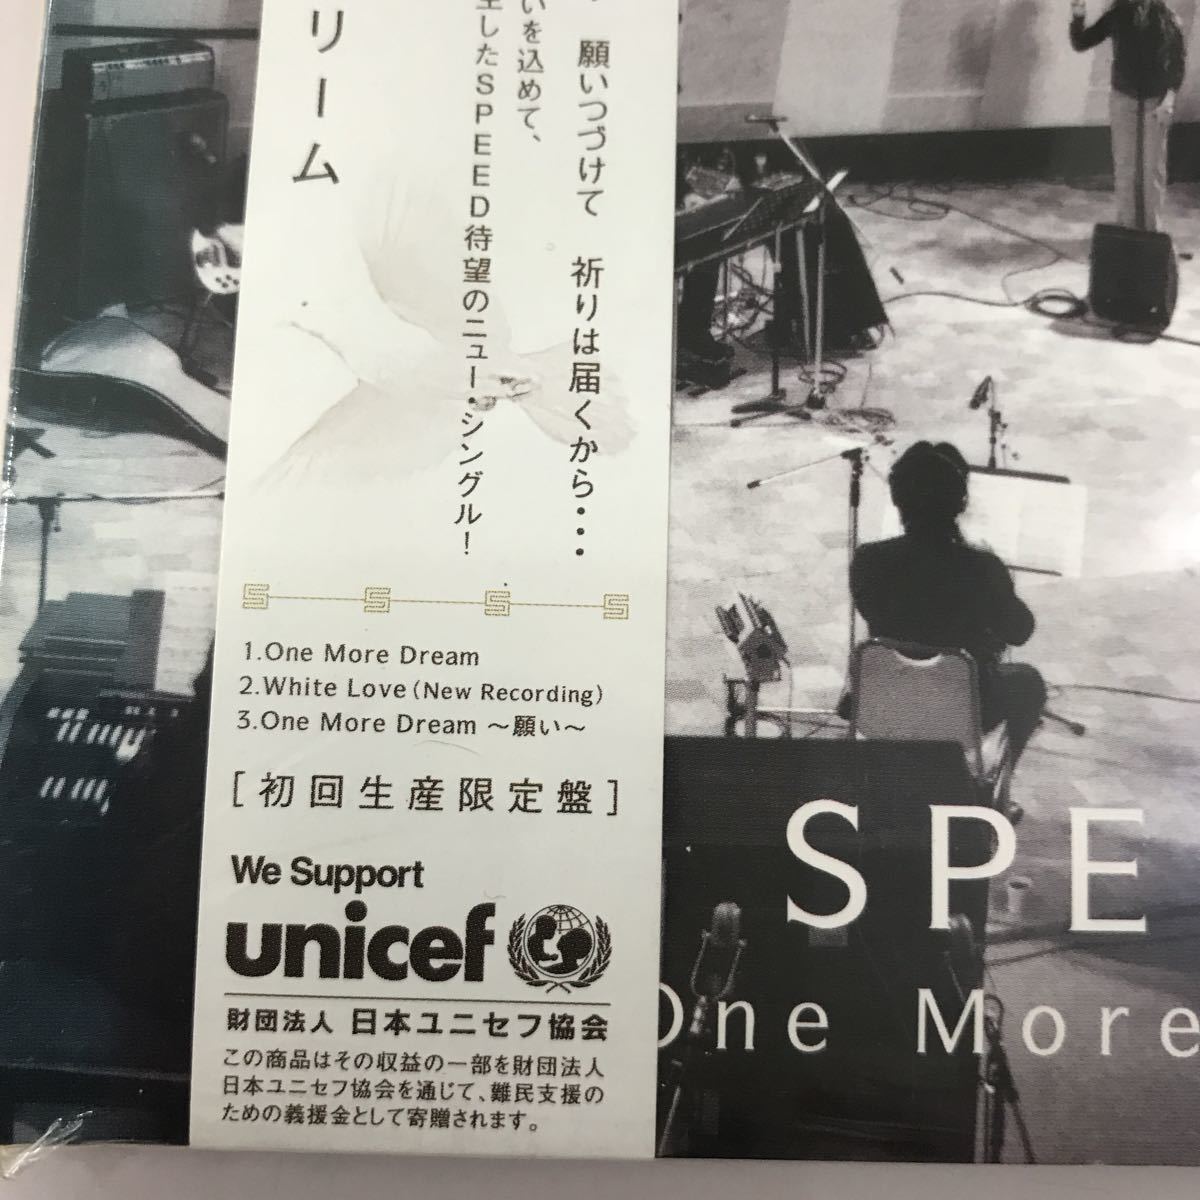 CD 長期保存品【邦楽】SPEED one more dream